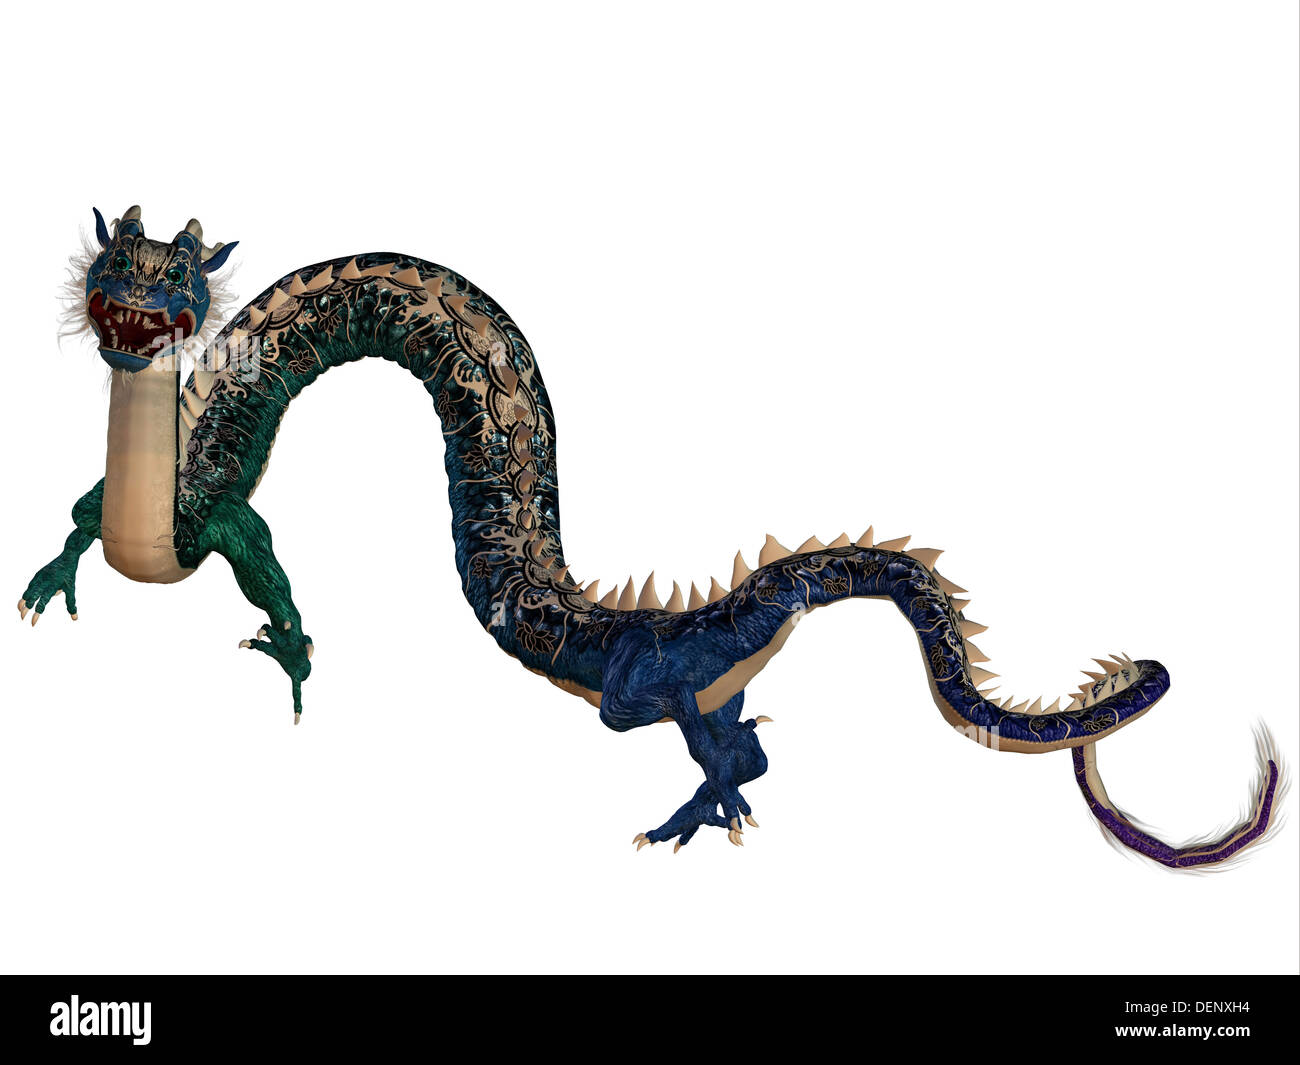 Una creatura di mito e fantasia il drago è un temibile mostro con le corna e denti di grandi dimensioni. Foto Stock